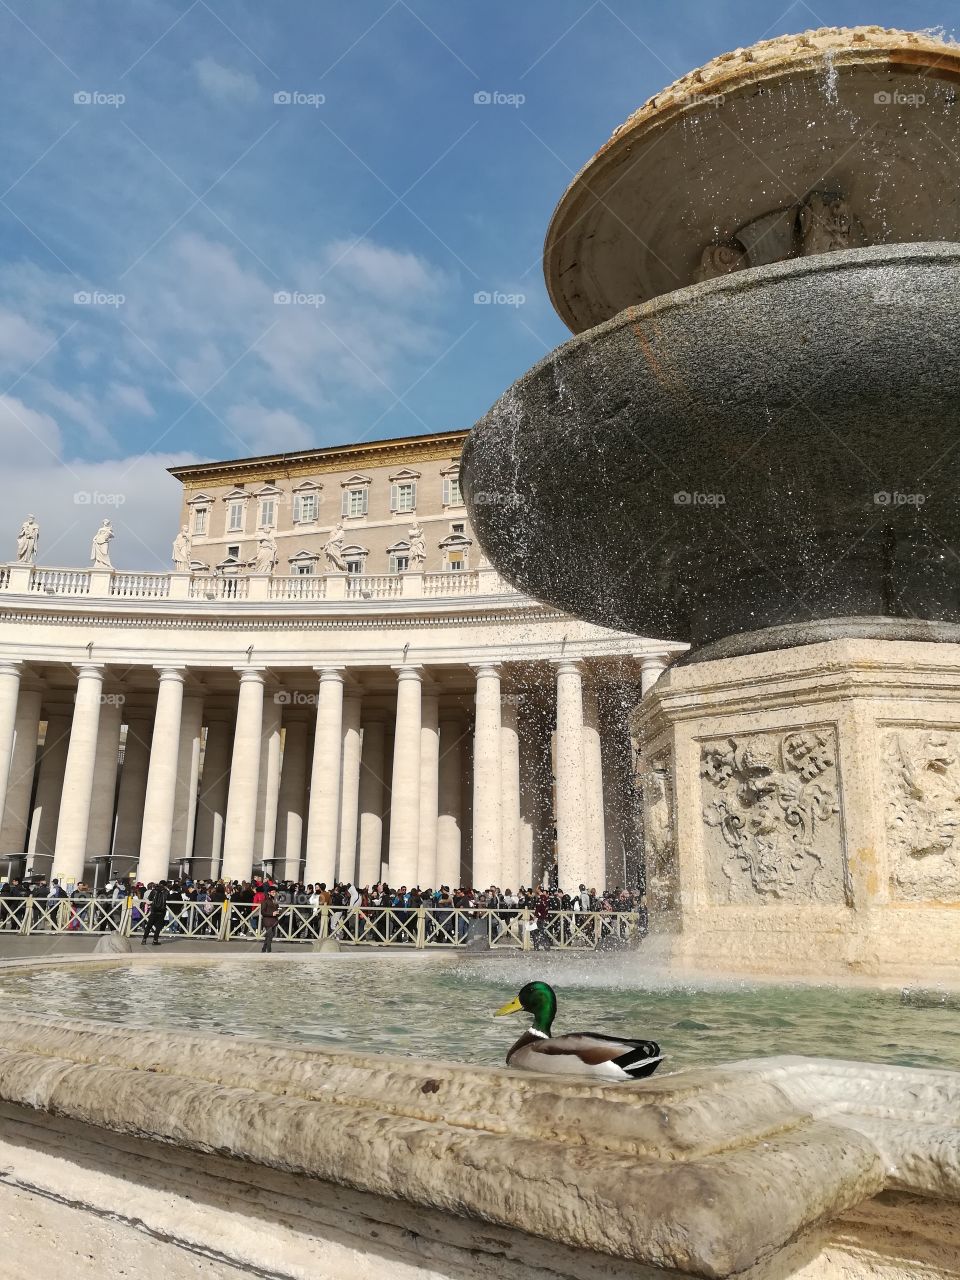 a Vatican duck